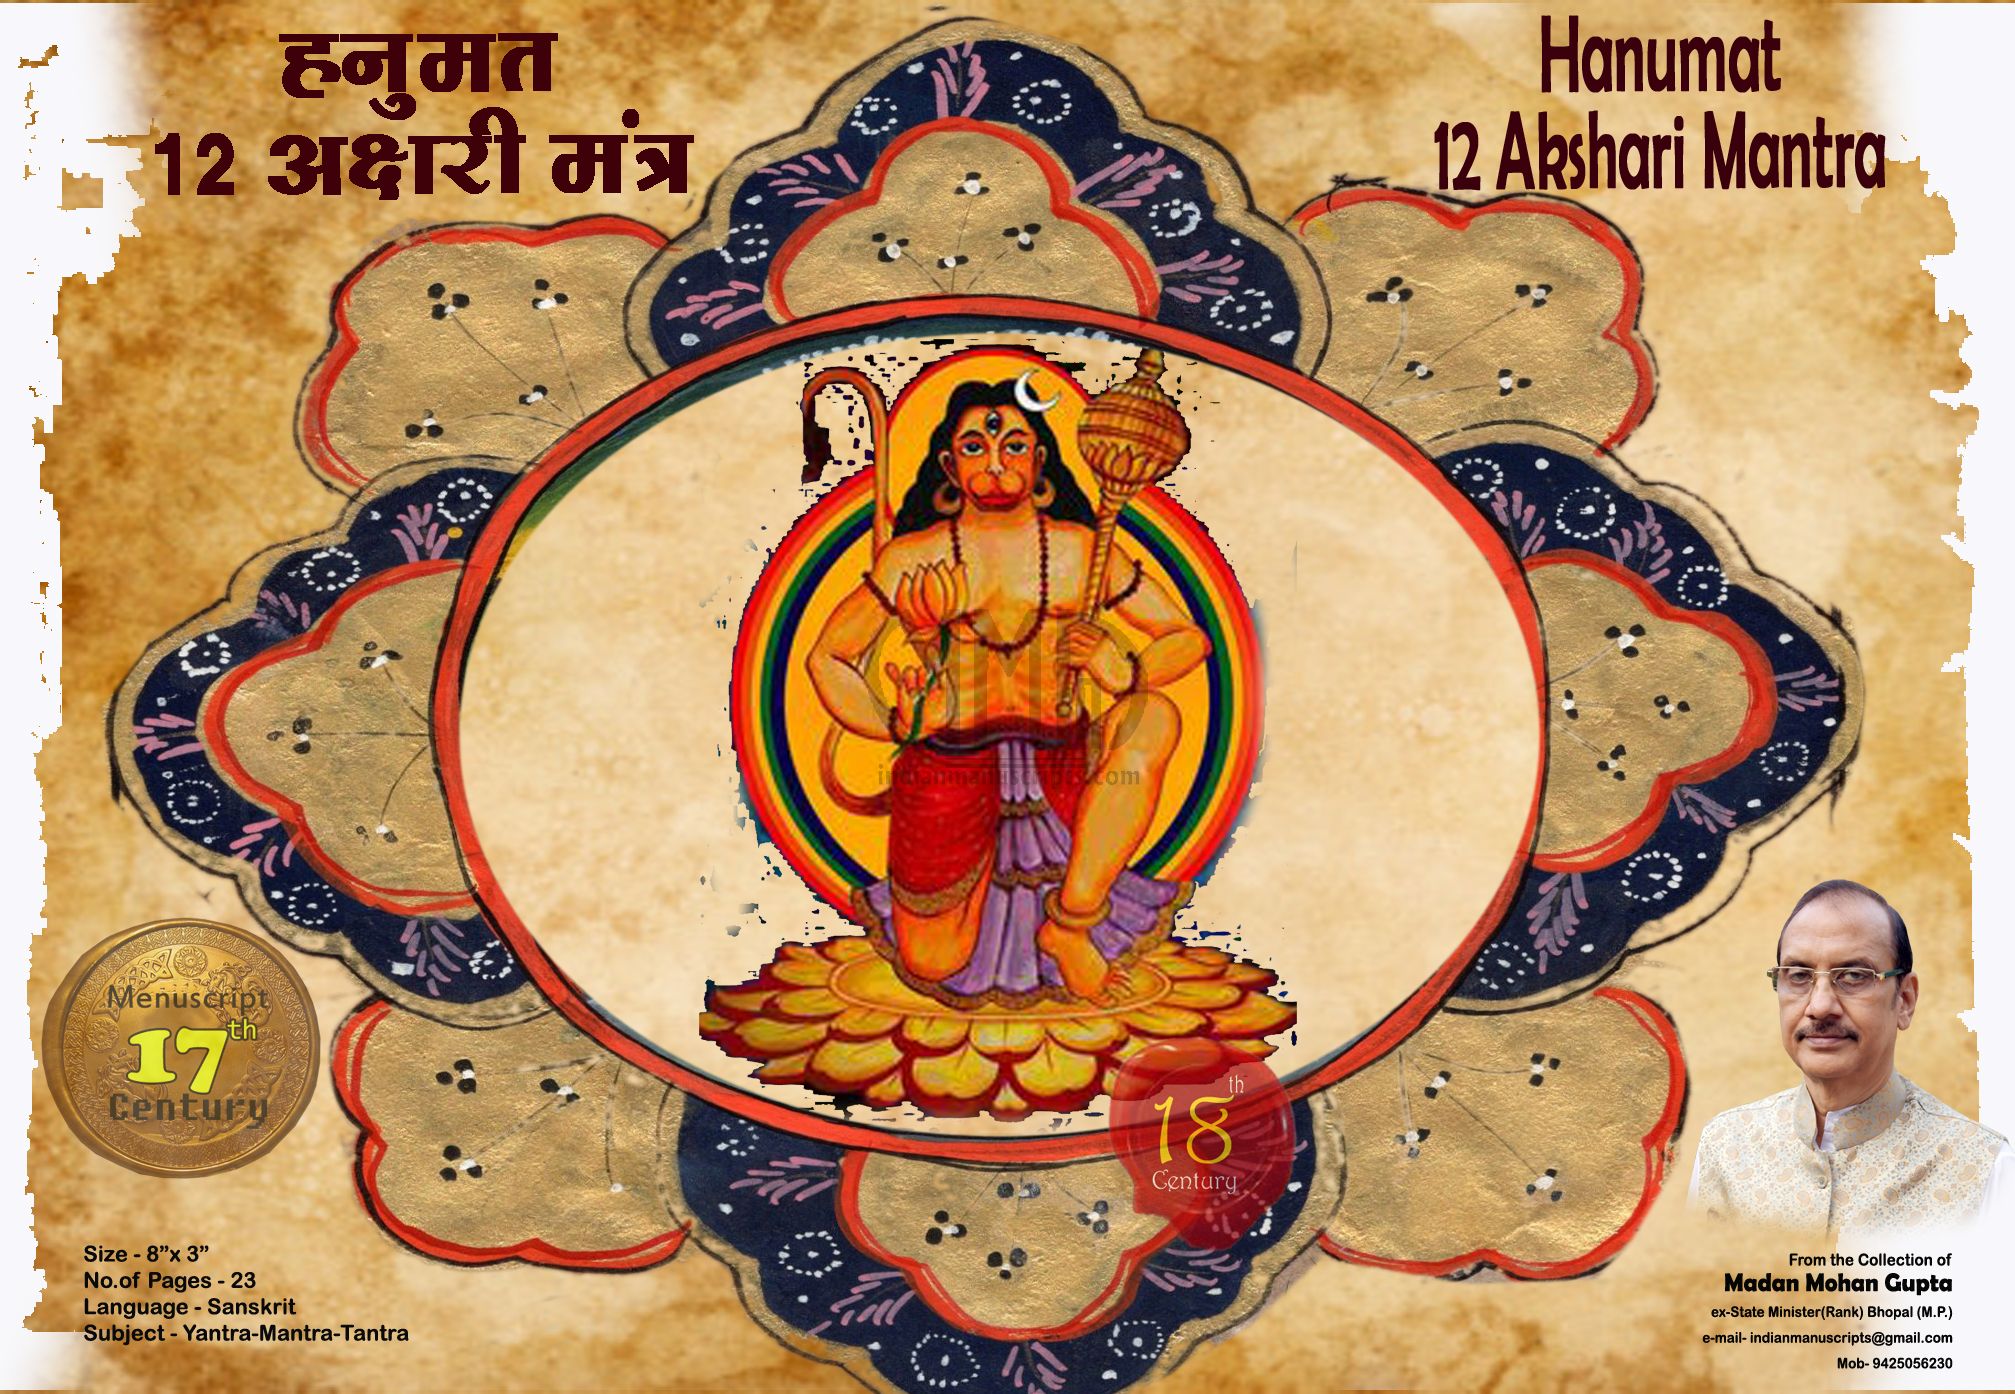 Hanumat 12 Akshari Mantra